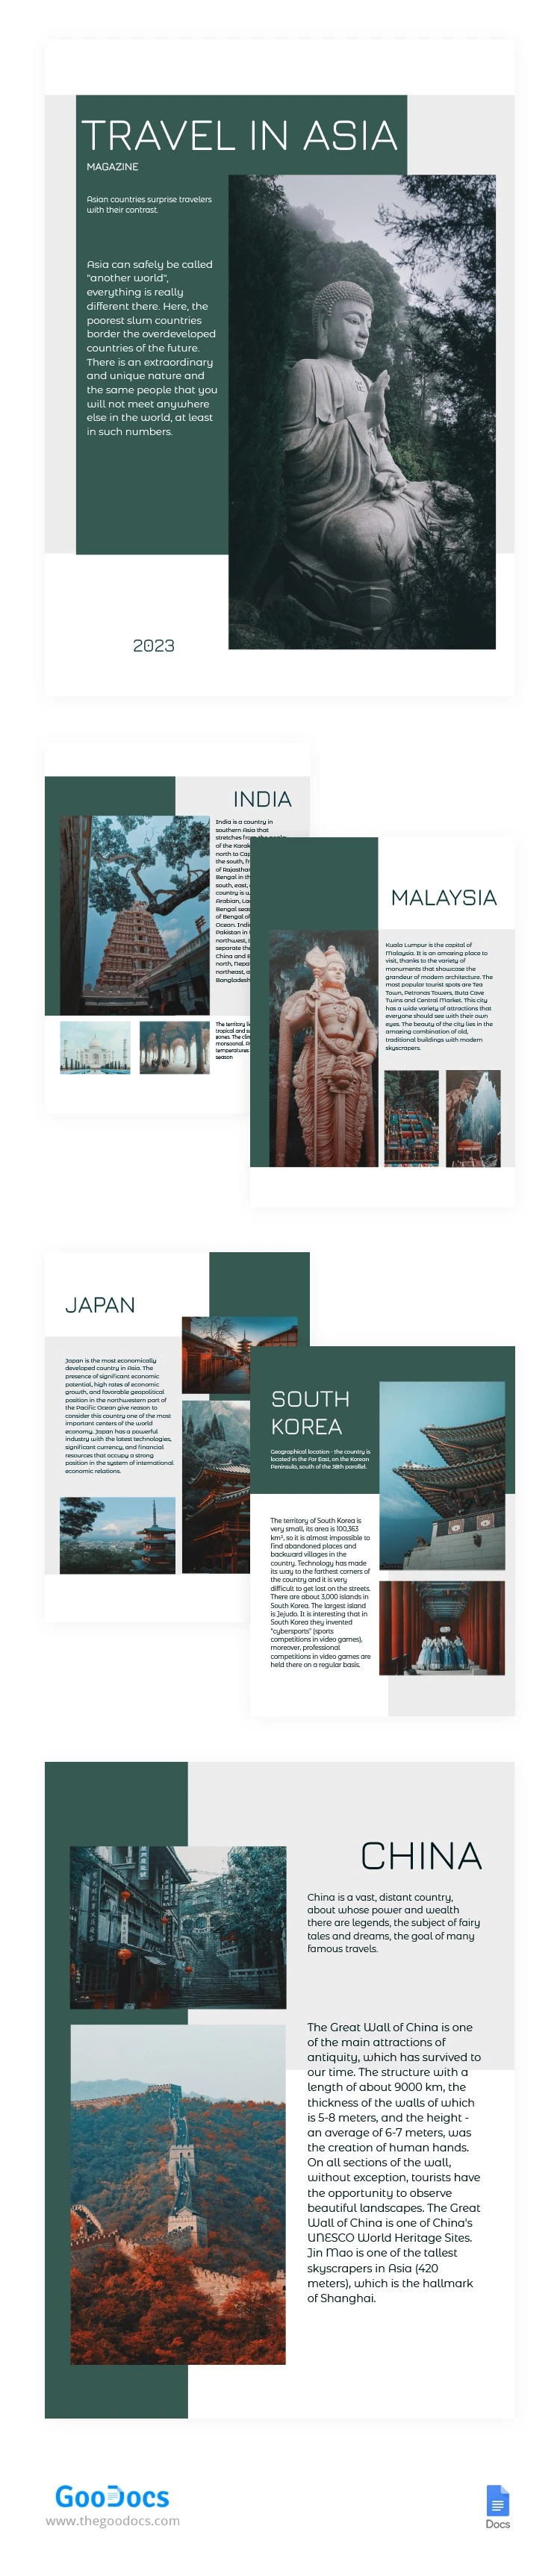 Revista de Viajes en Asia - free Google Docs Template - 10064796